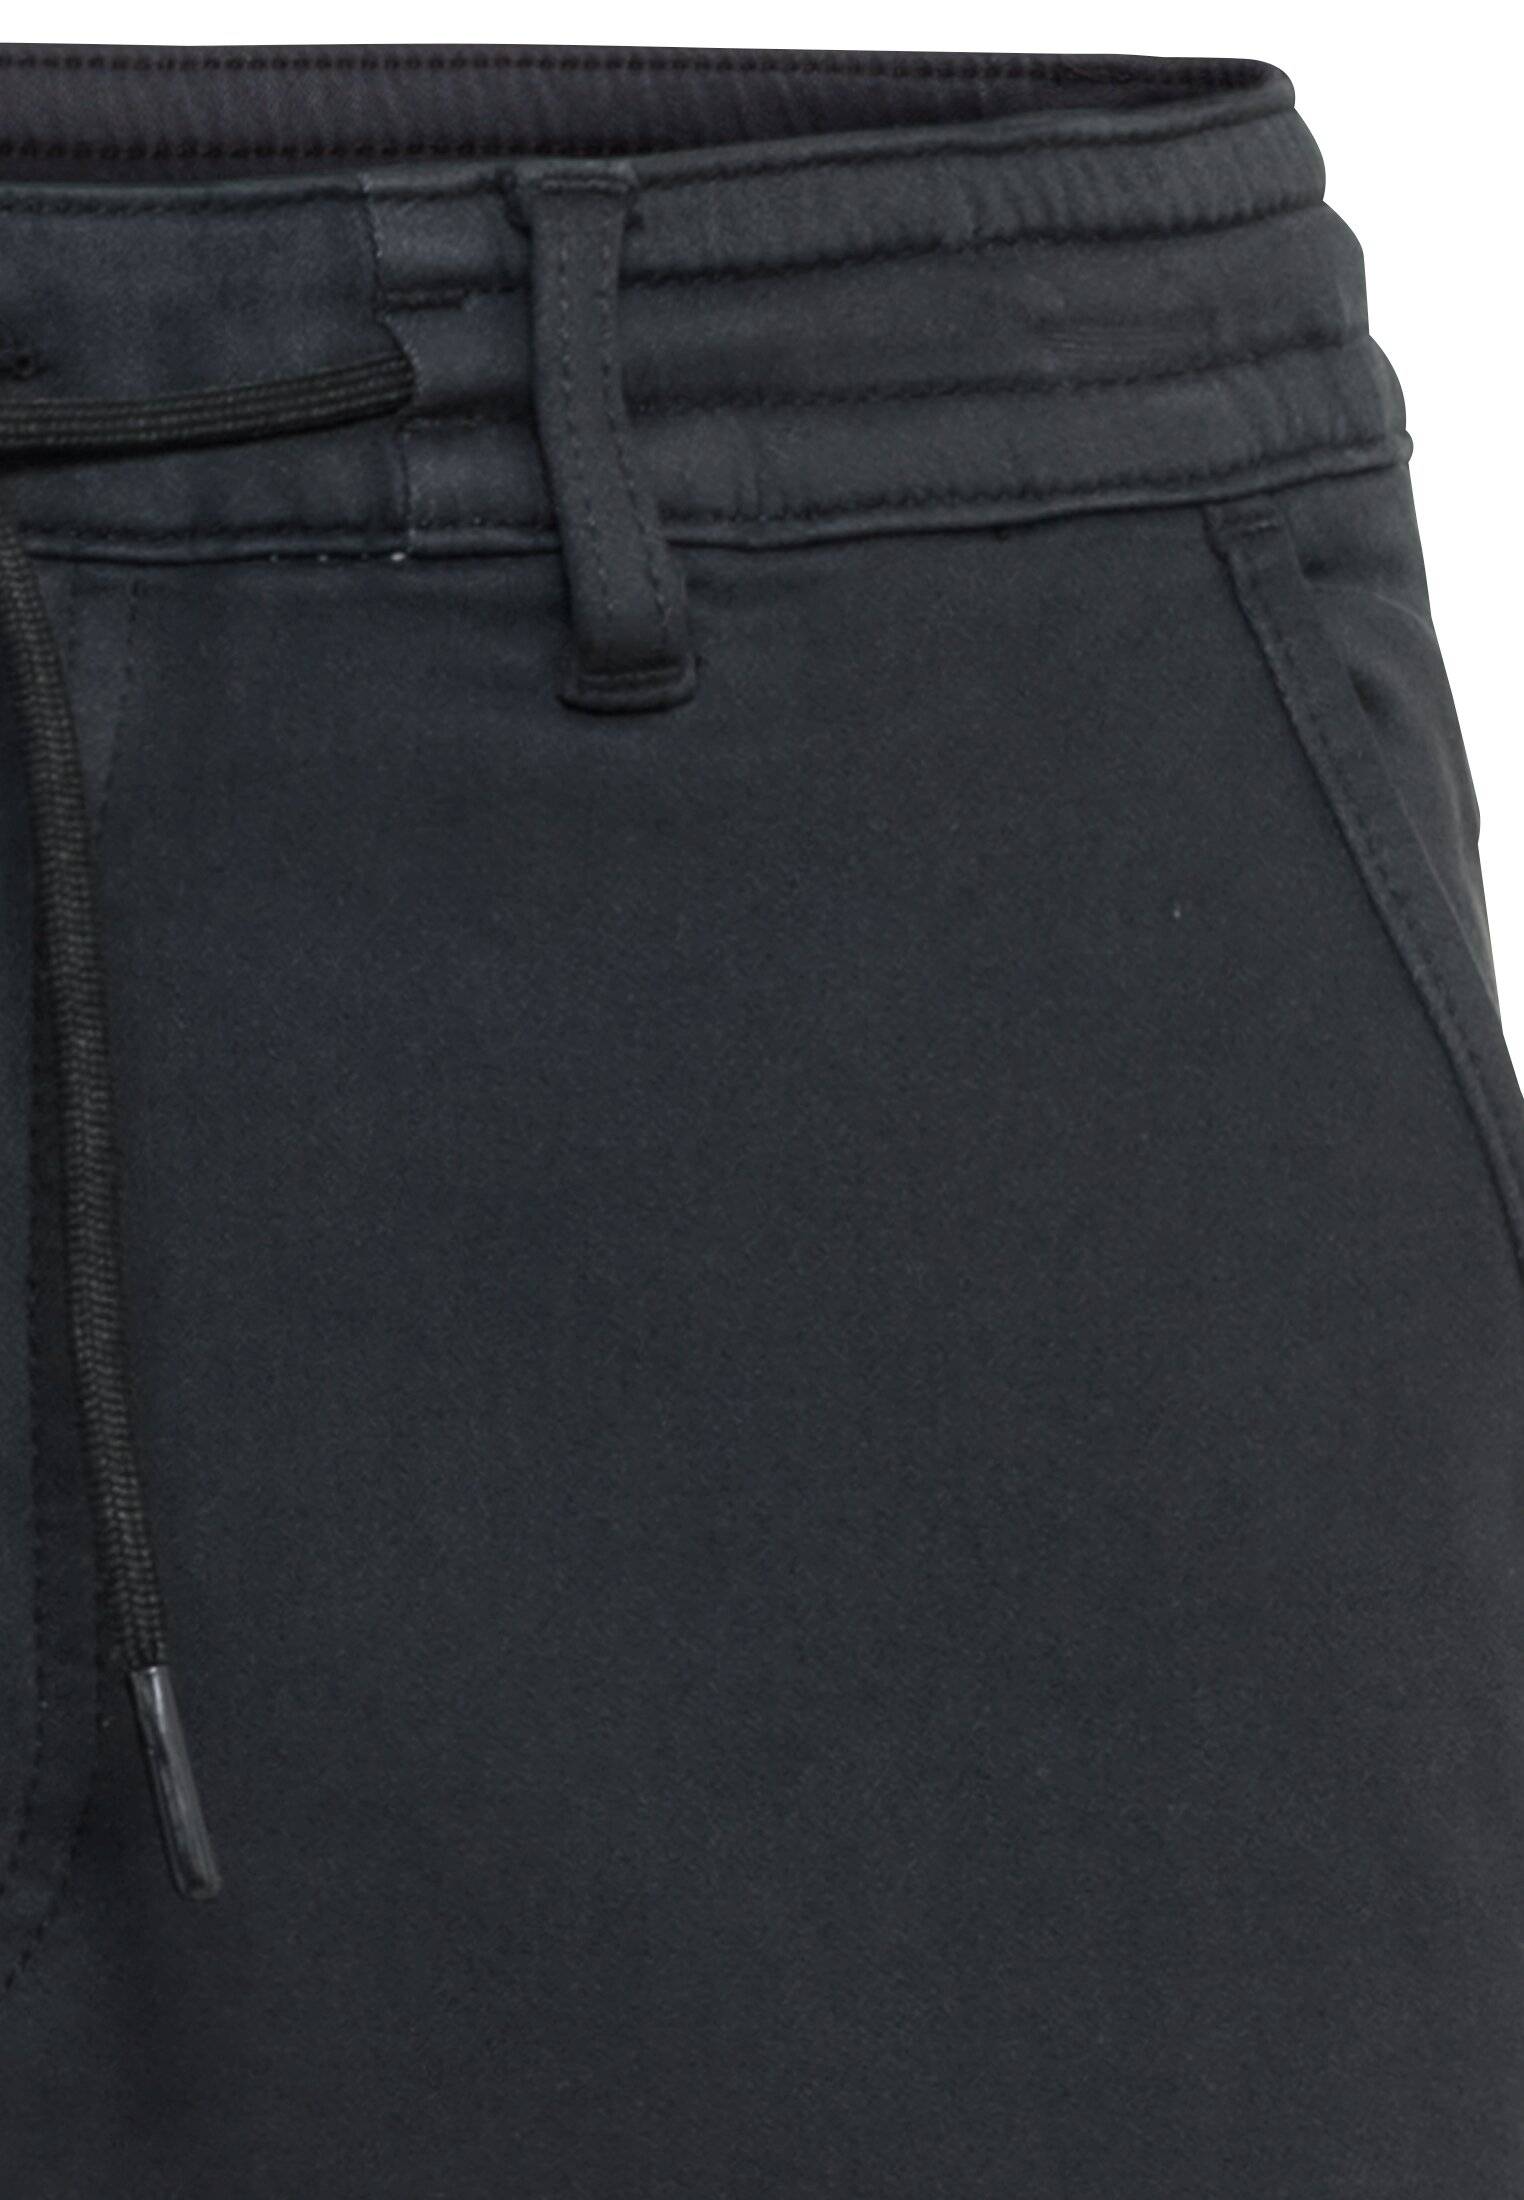 Мужские брюки Camel Active, серые, цвет серый, размер 33 - фото 3